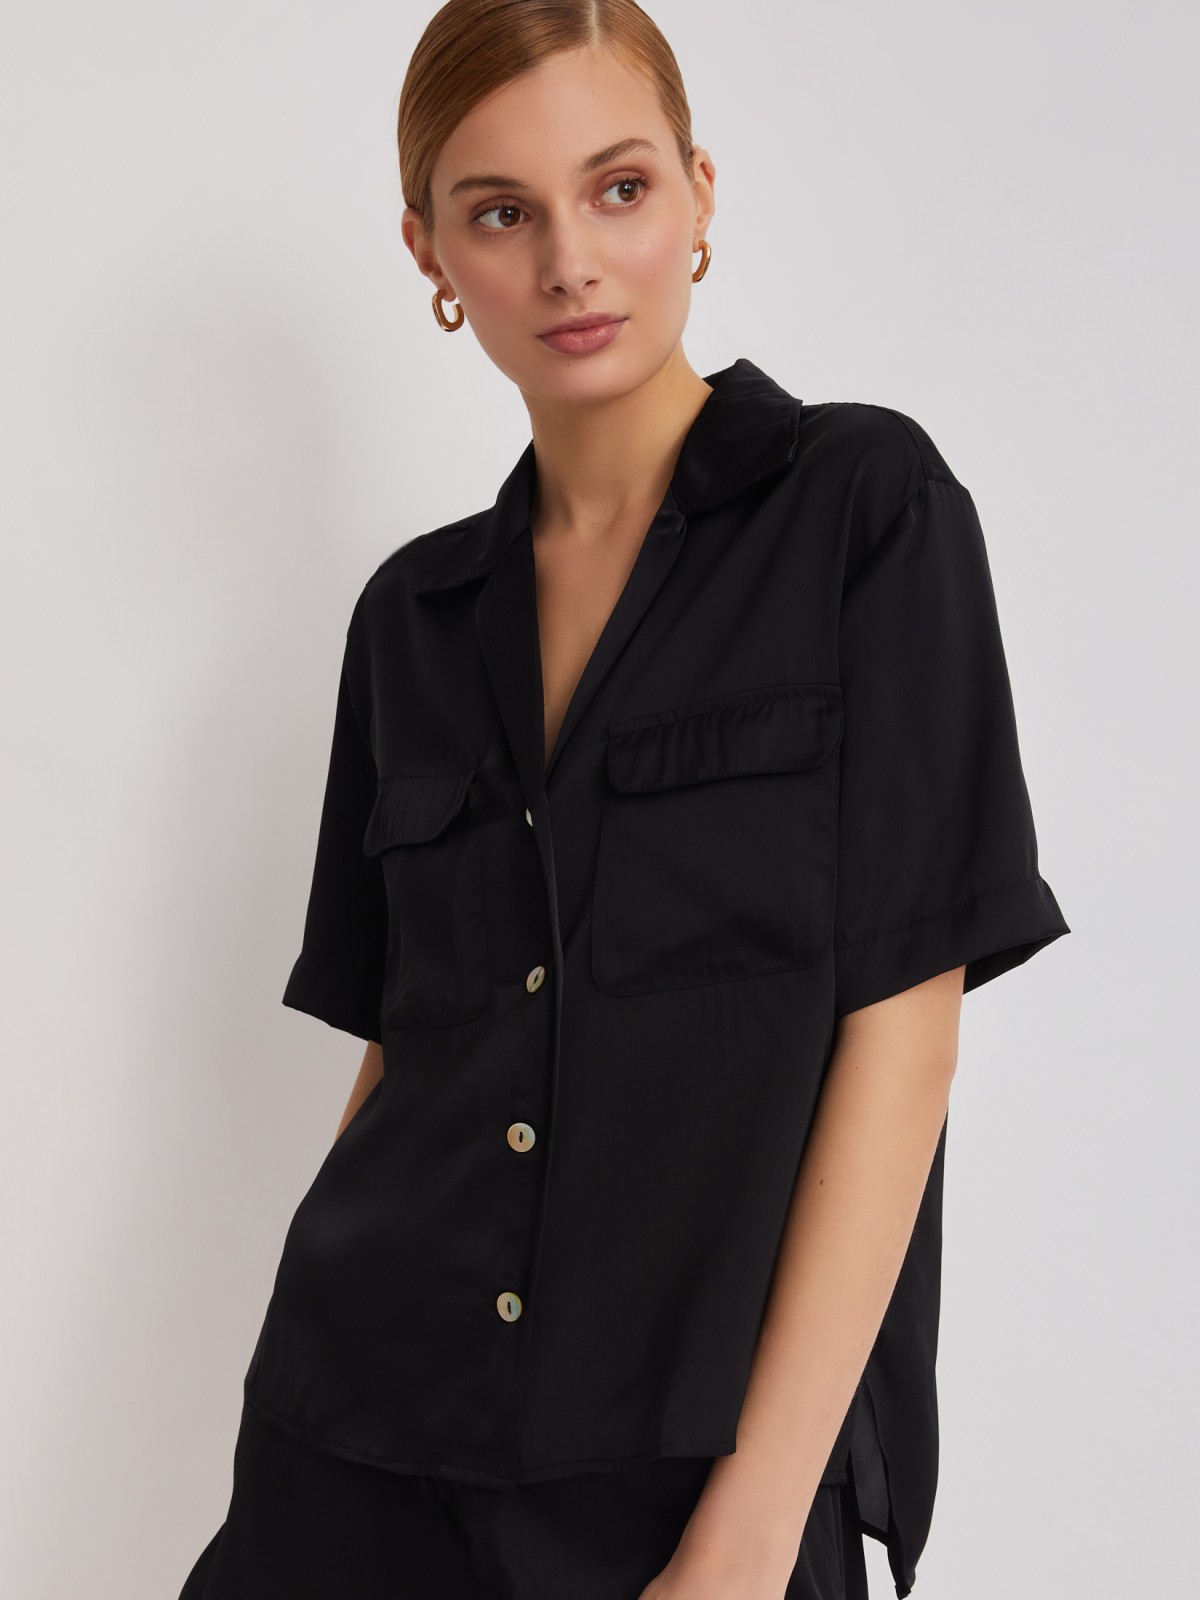 Блузка с короткими рукавами zolla 22325127Y061, цвет черный, размер XS - фото 1